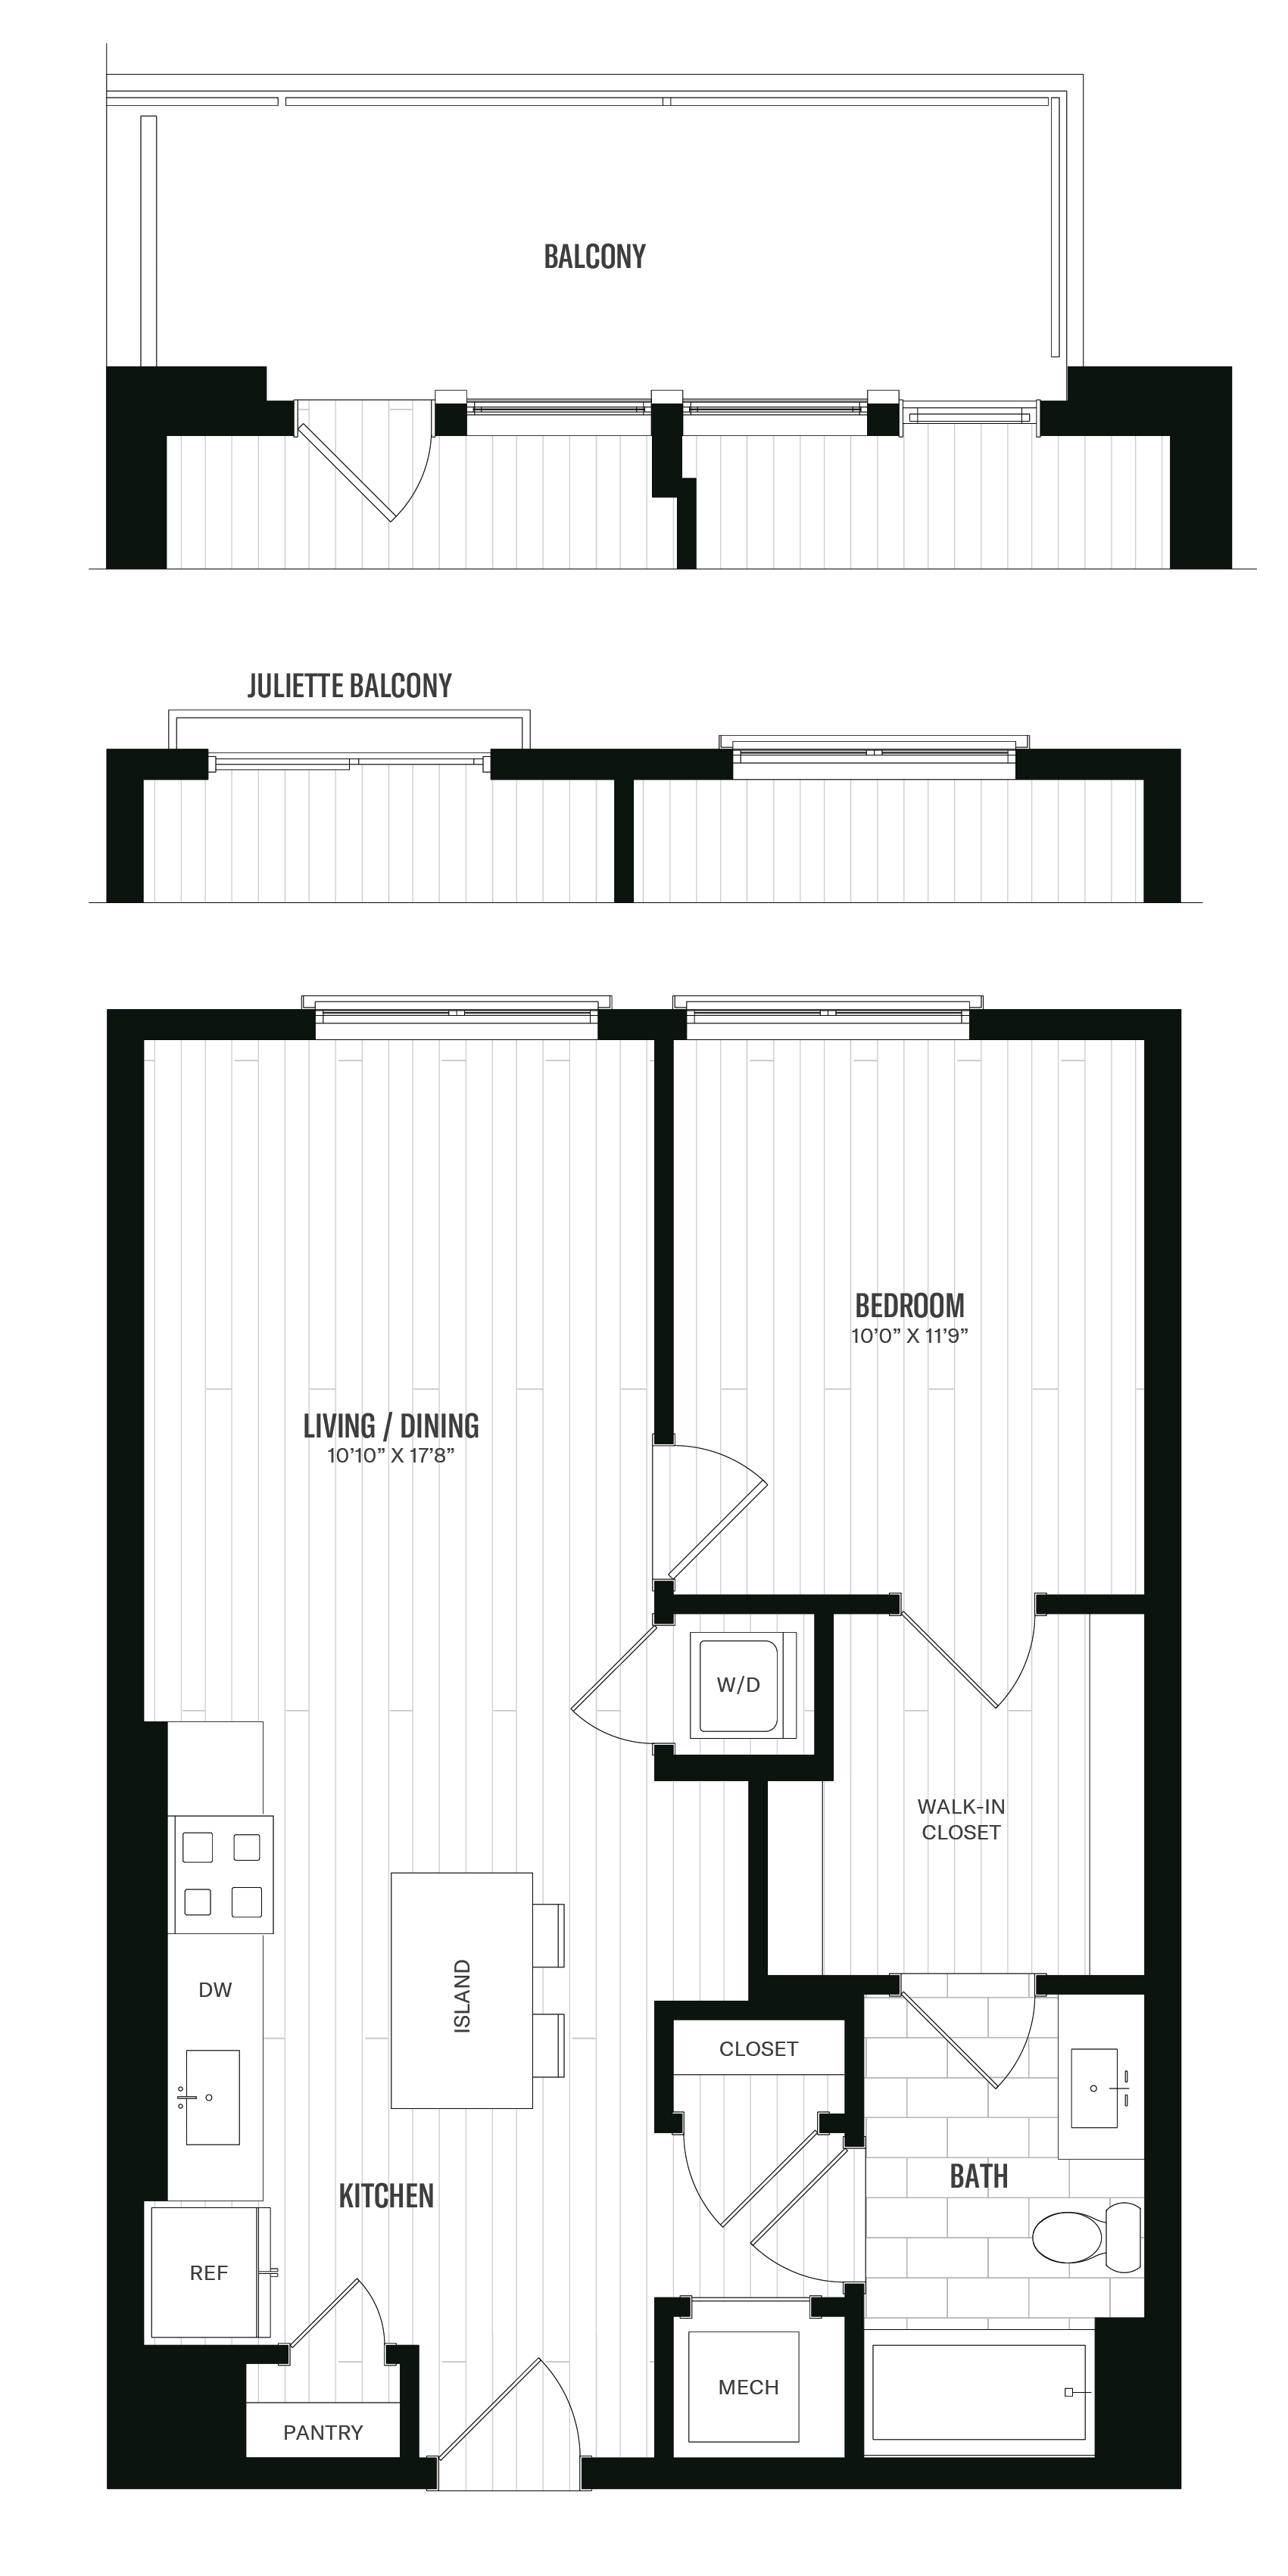 Floorplan image of unit 527